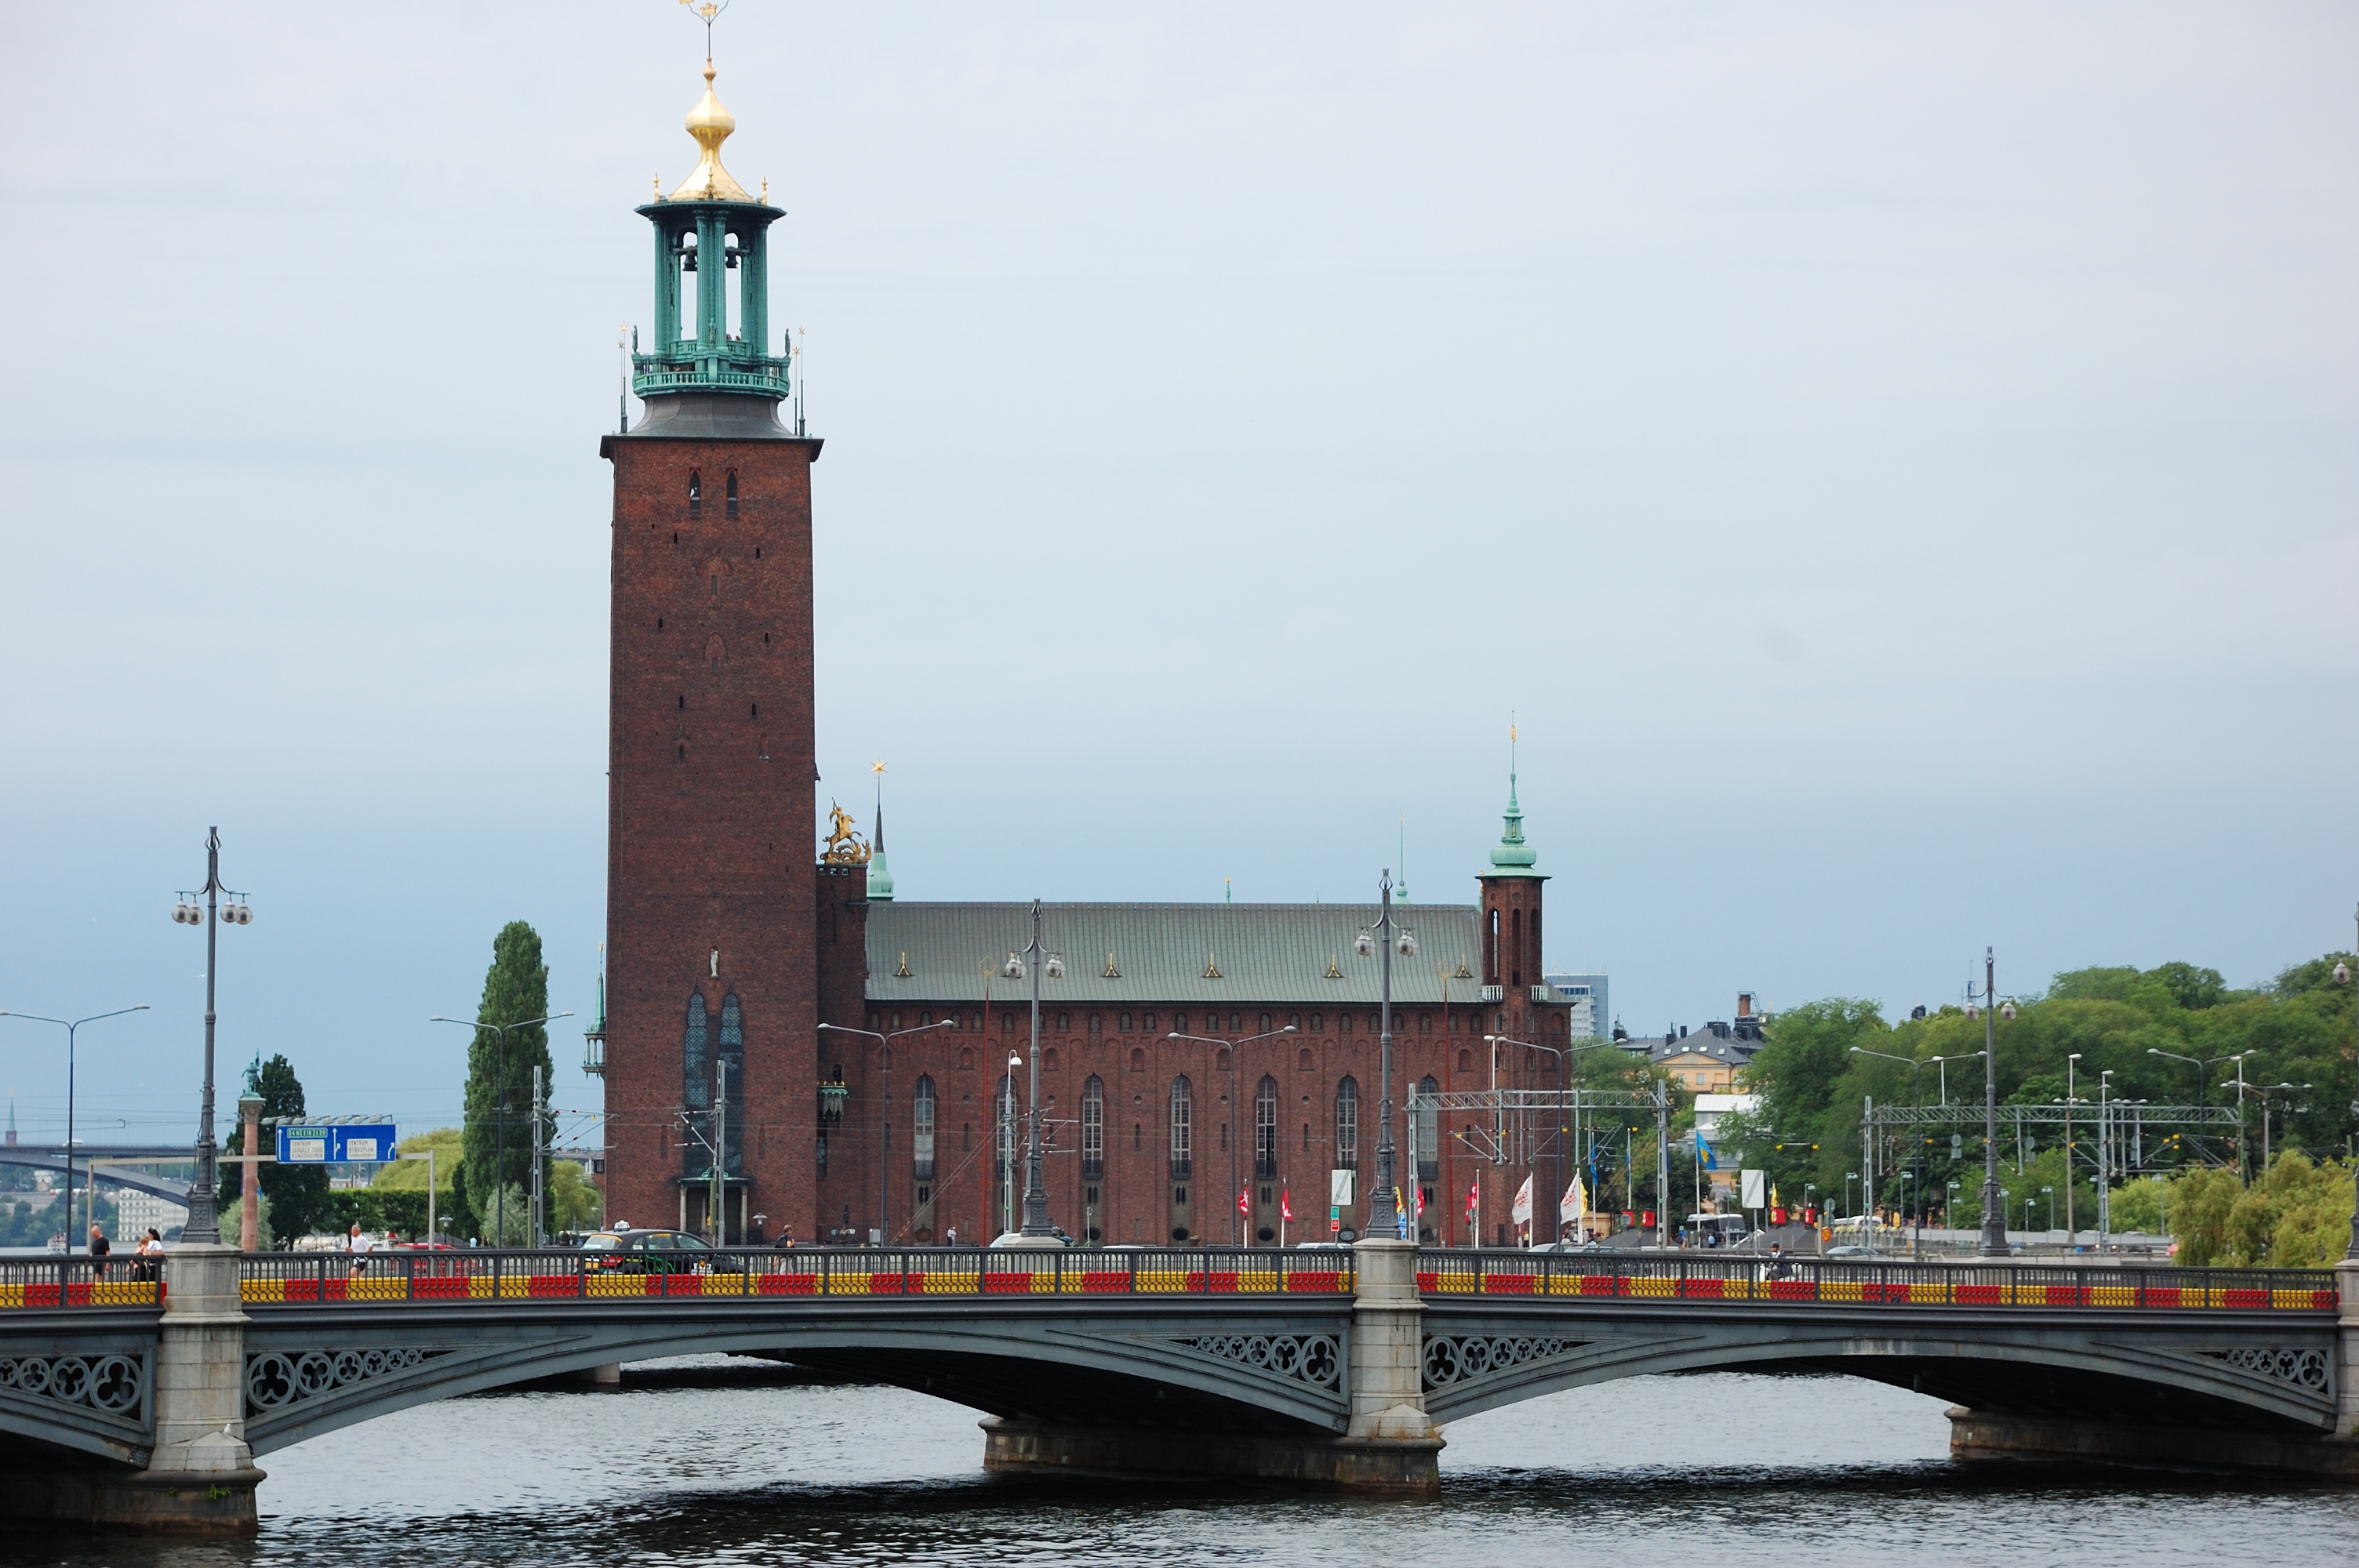 斯德哥尔摩 免费图片 - Public Domain Pictures